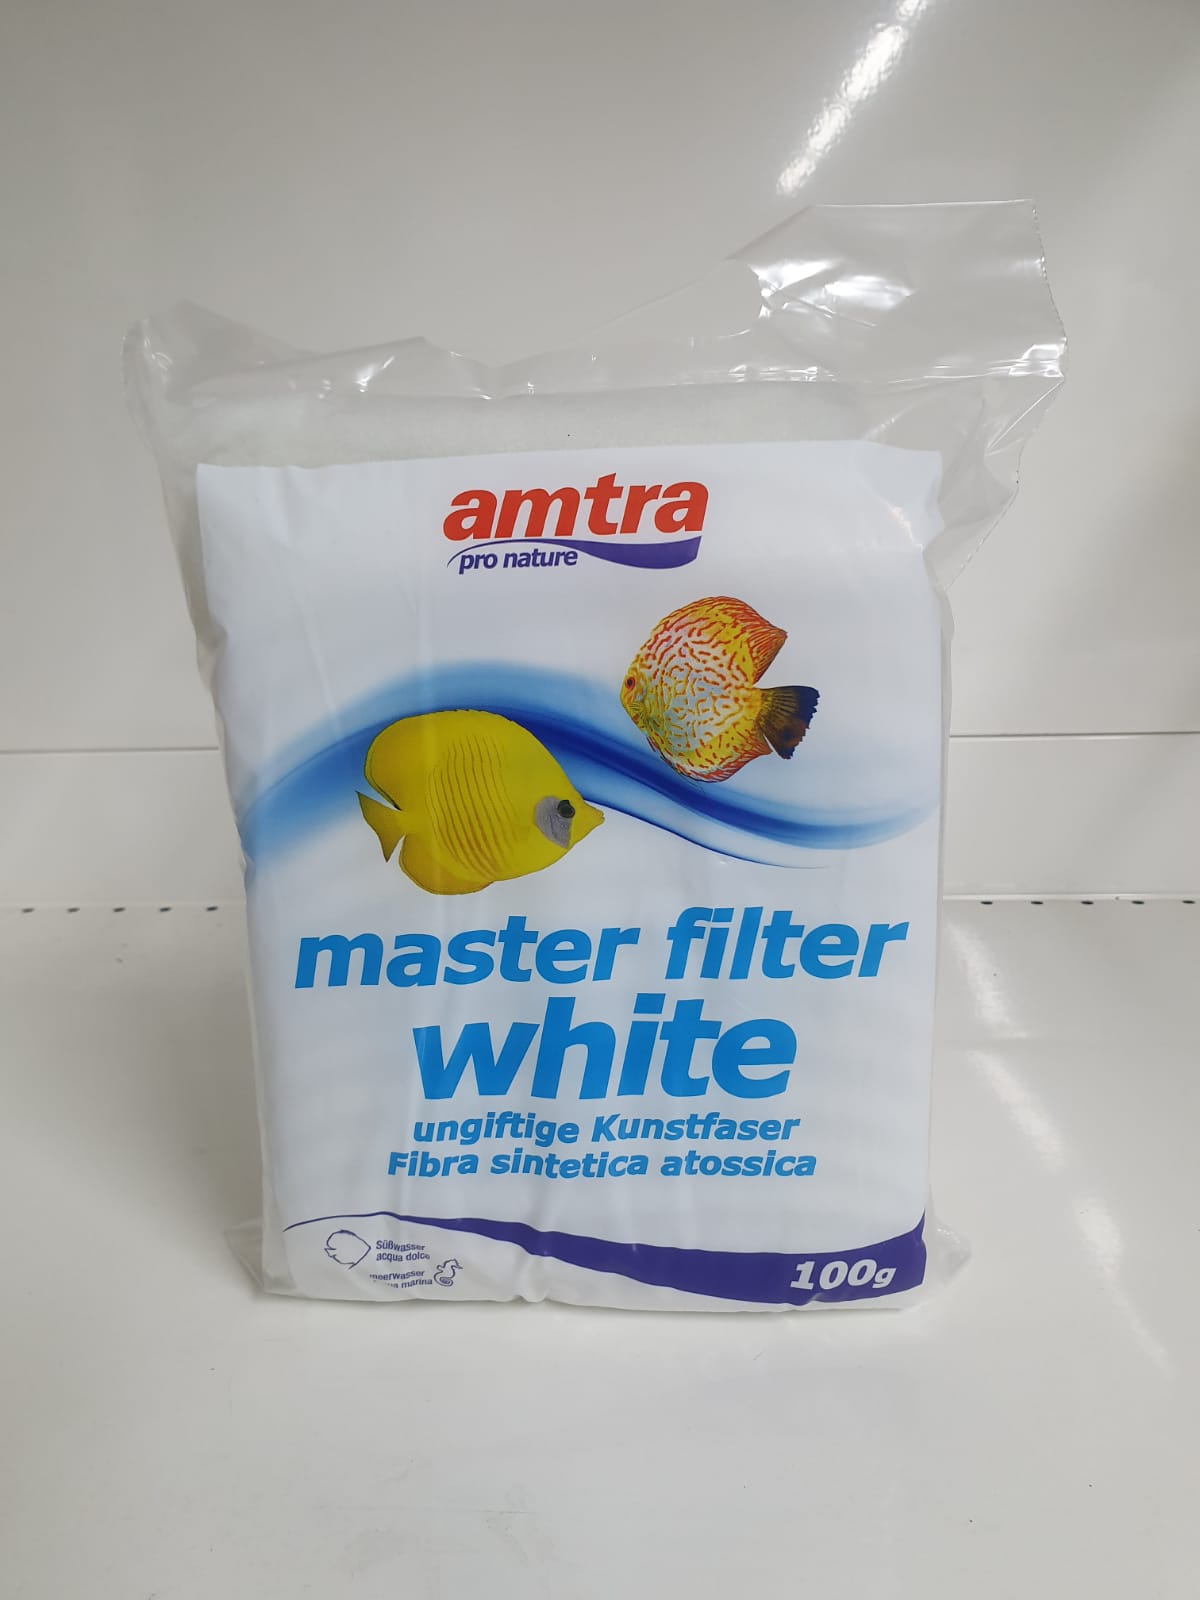 master filter white fibra sintetica atossica 100g